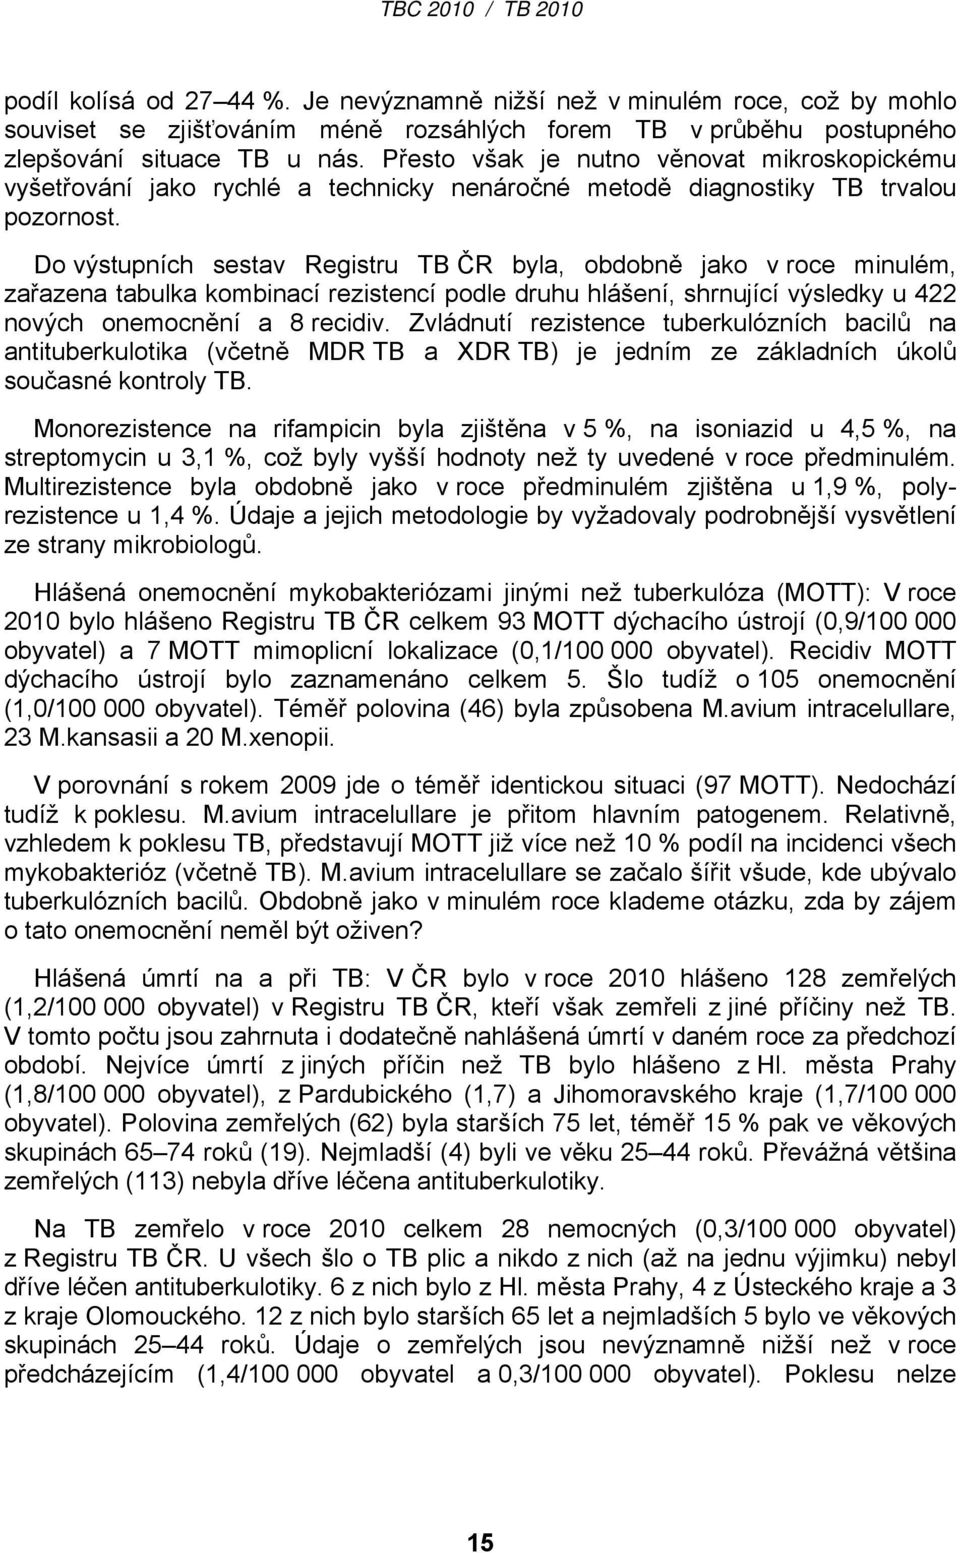 Do výstupních sestav Registru TB ČR byla, obdobně jako v roce minulém, zařazena tabulka kombinací rezistencí podle druhu hlášení, shrnující výsledky u 422 nových onemocnění a 8 recidiv.